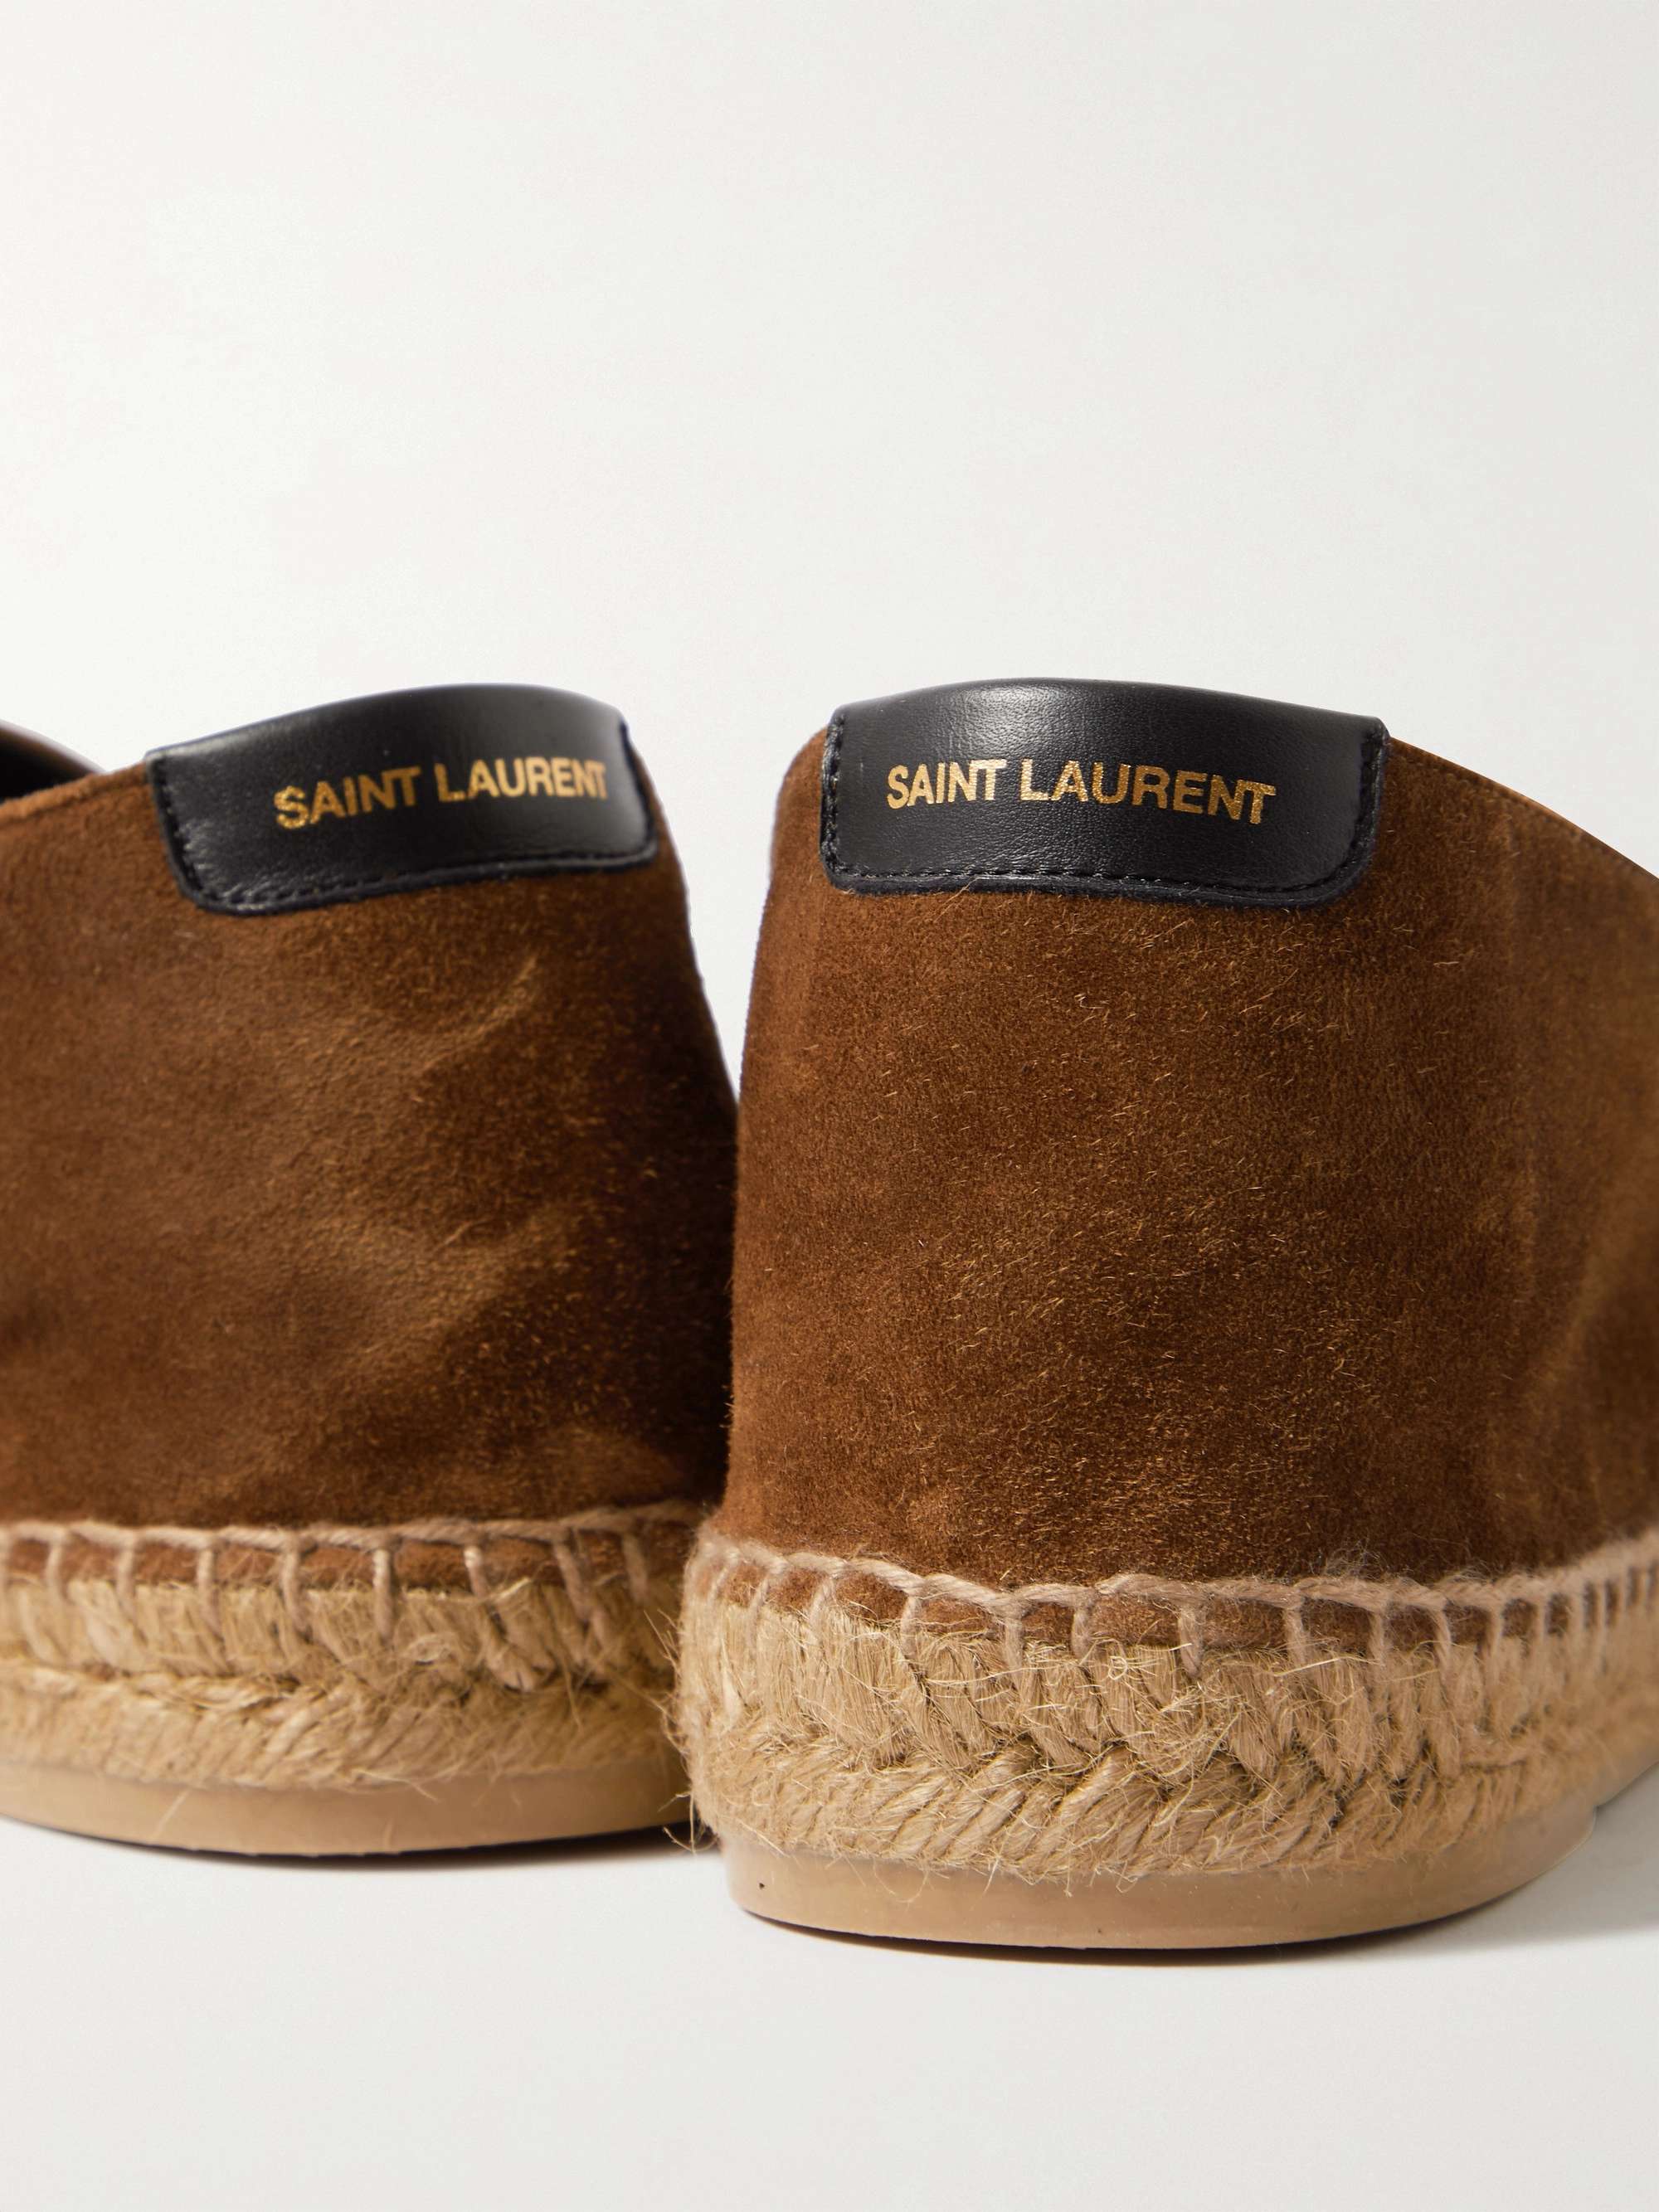 Saint Laurent Men's Leather-Trimmed Suede Espadrilles